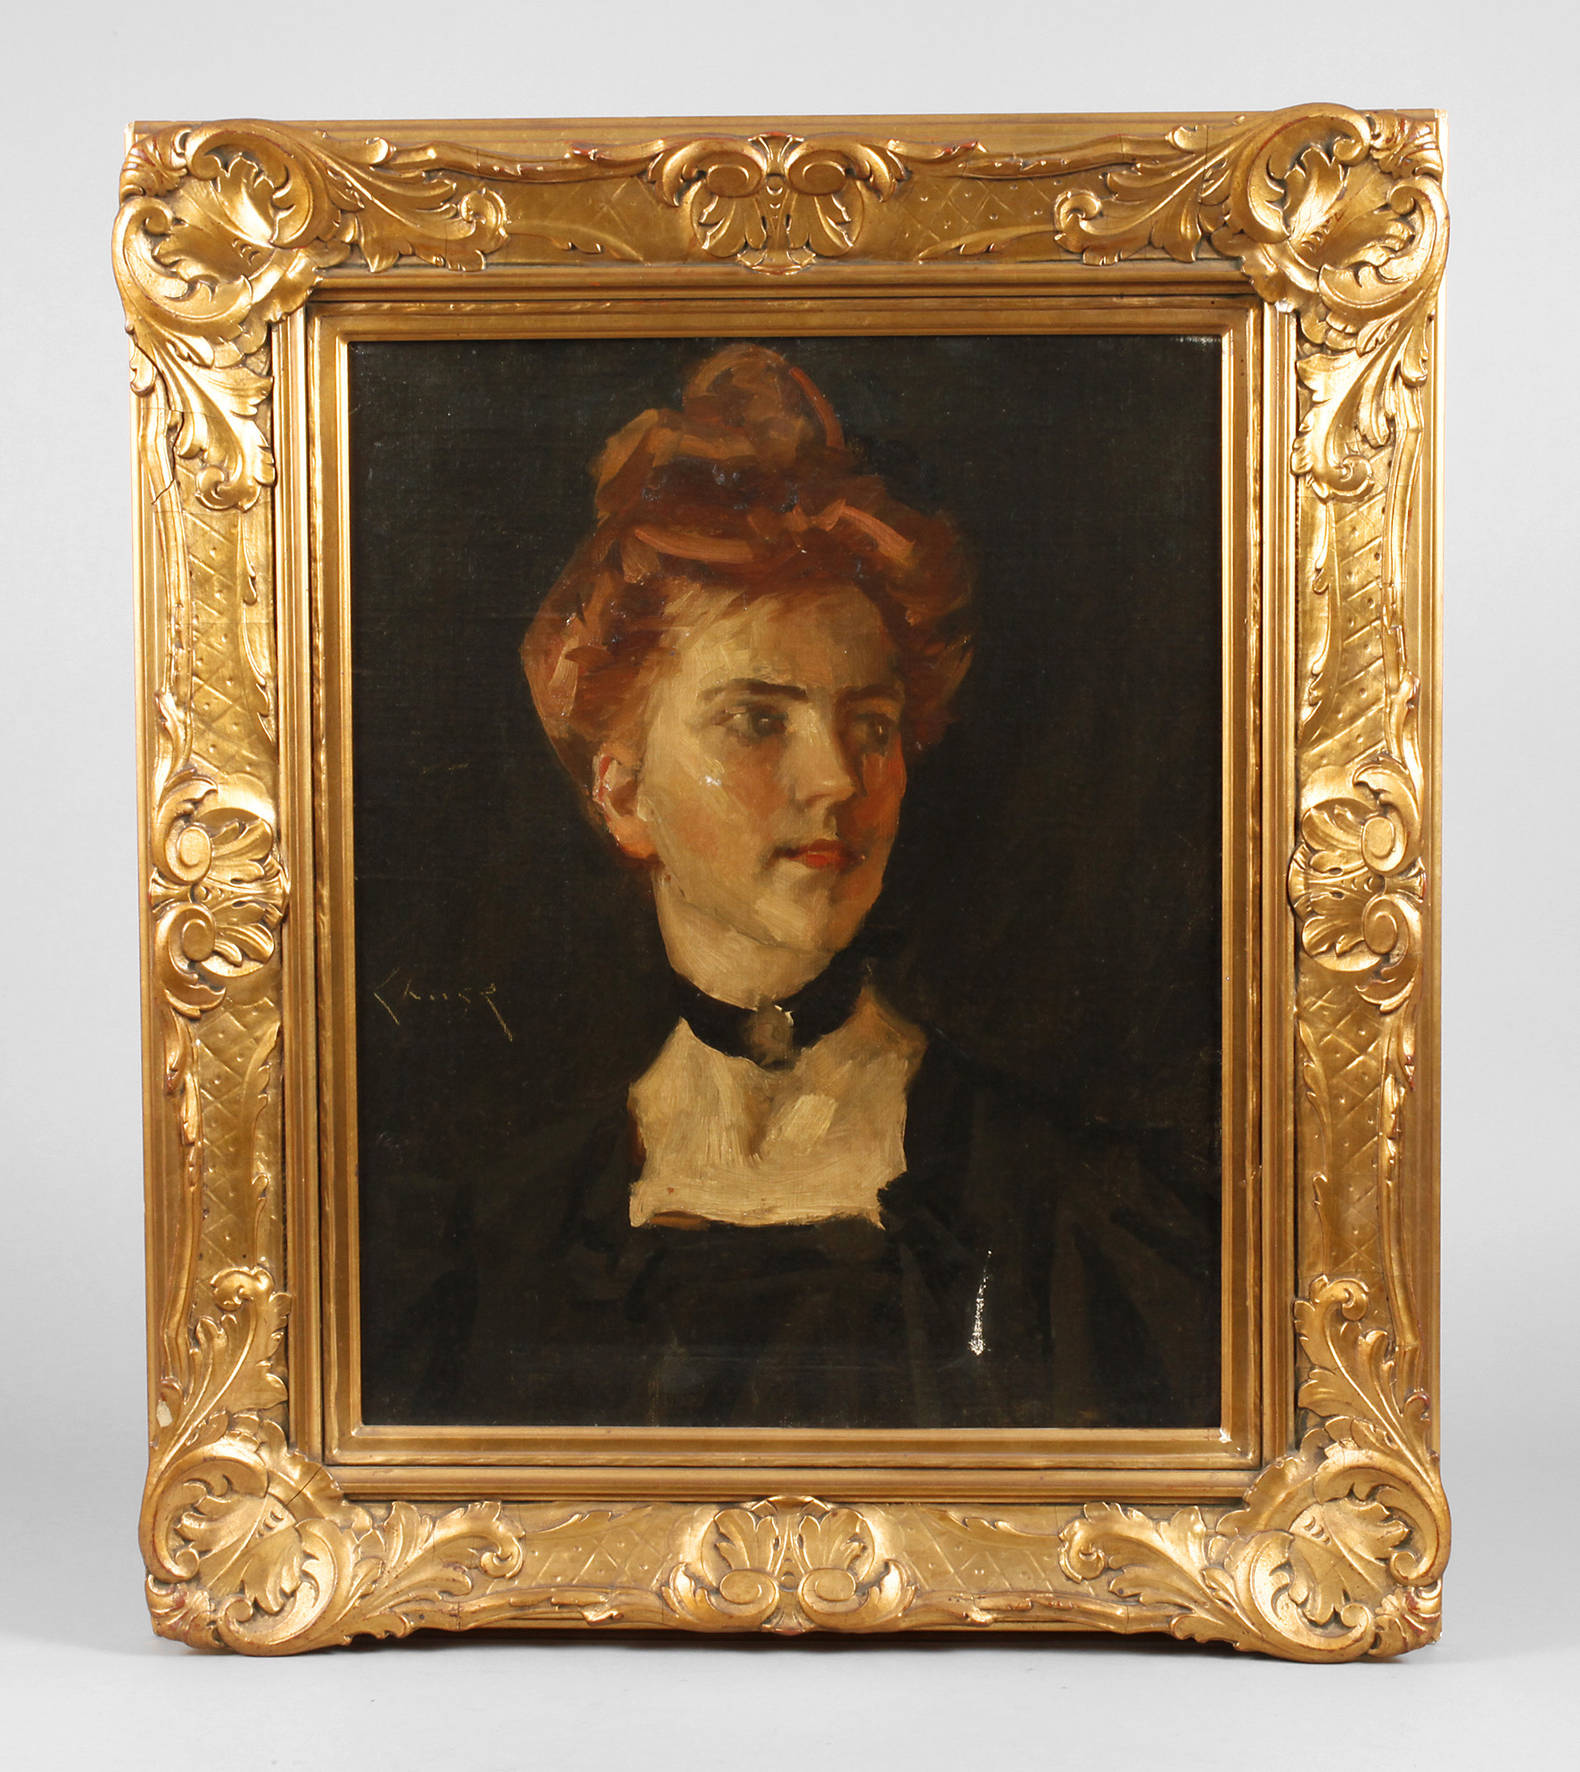 William Merritt Chase, Portrait einer jungen Frau